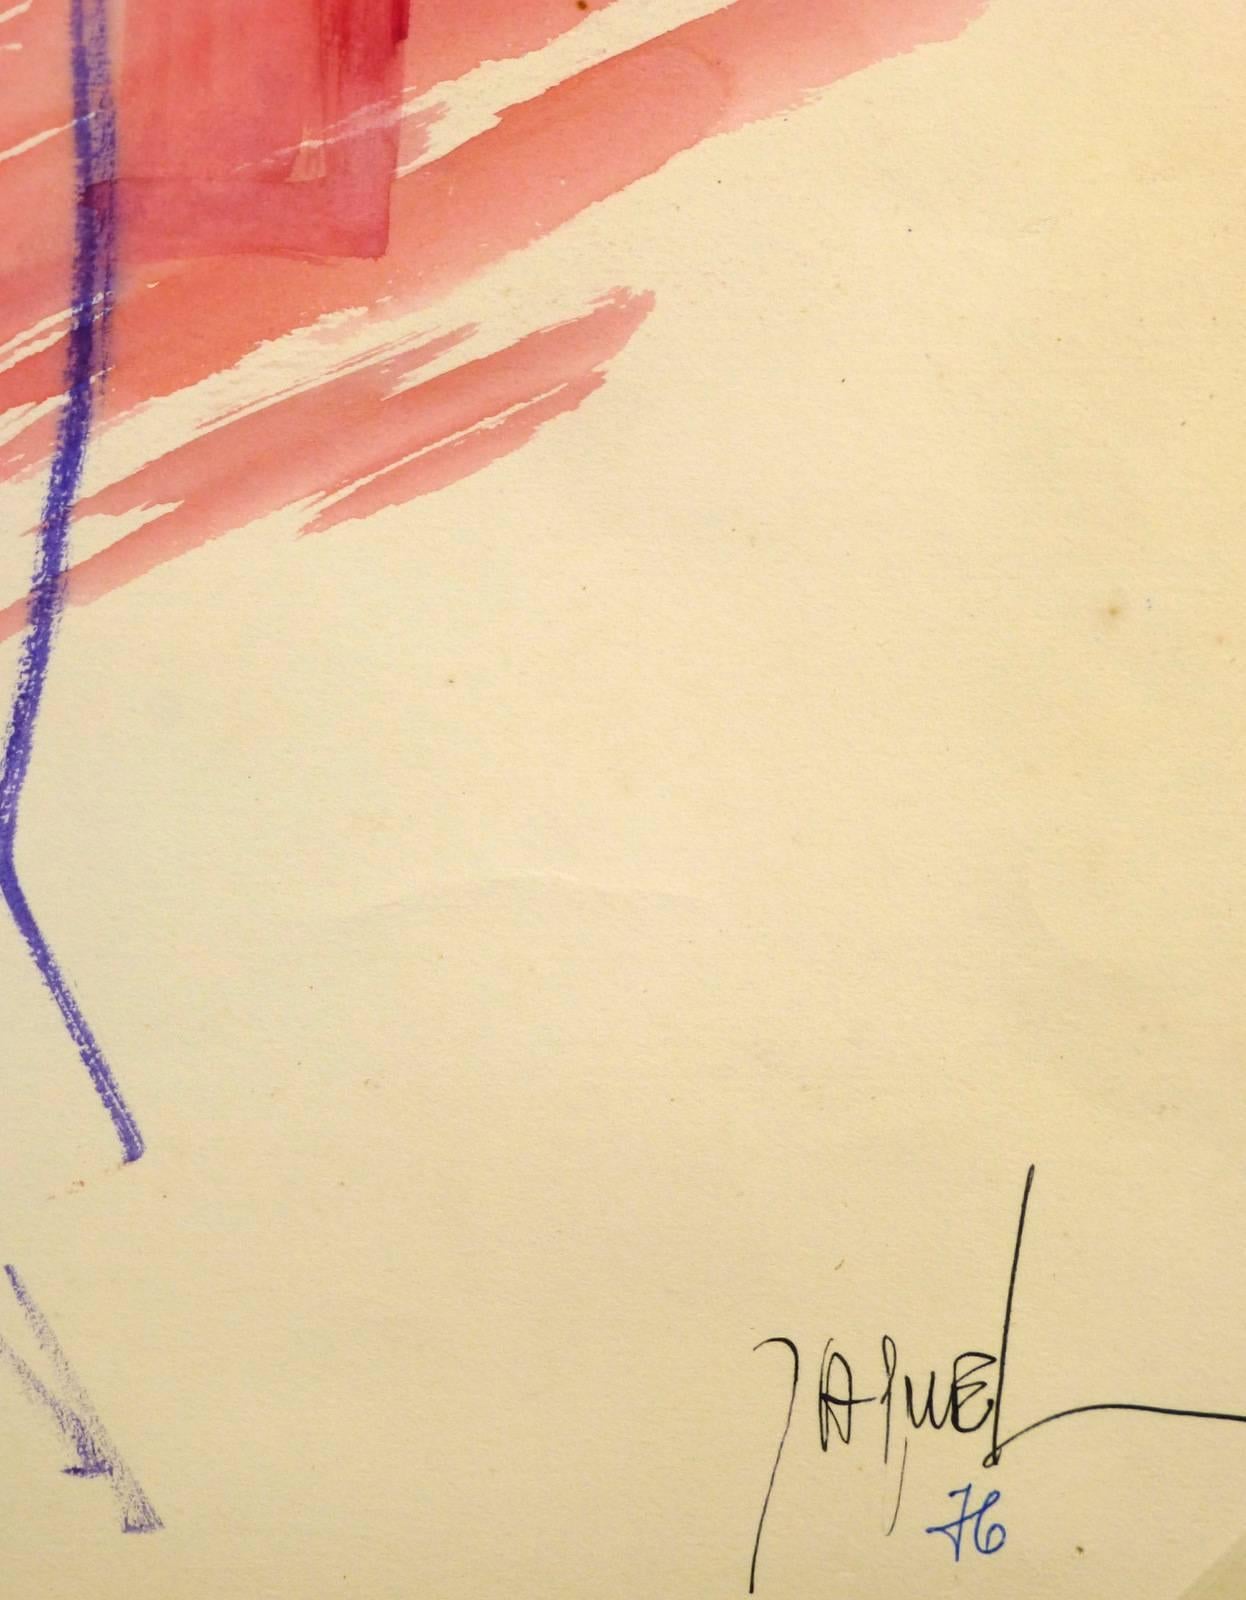 Moderner weiblicher Akt in Rosa und Lila von der französischen Künstlerin Jaquel, 1976. Signiert unten rechts.  

Originalkunstwerk auf Papier auf einem weißen Passepartout mit Goldrand. Die Matte passt in einen Rahmen in Standardgröße.  Inklusive